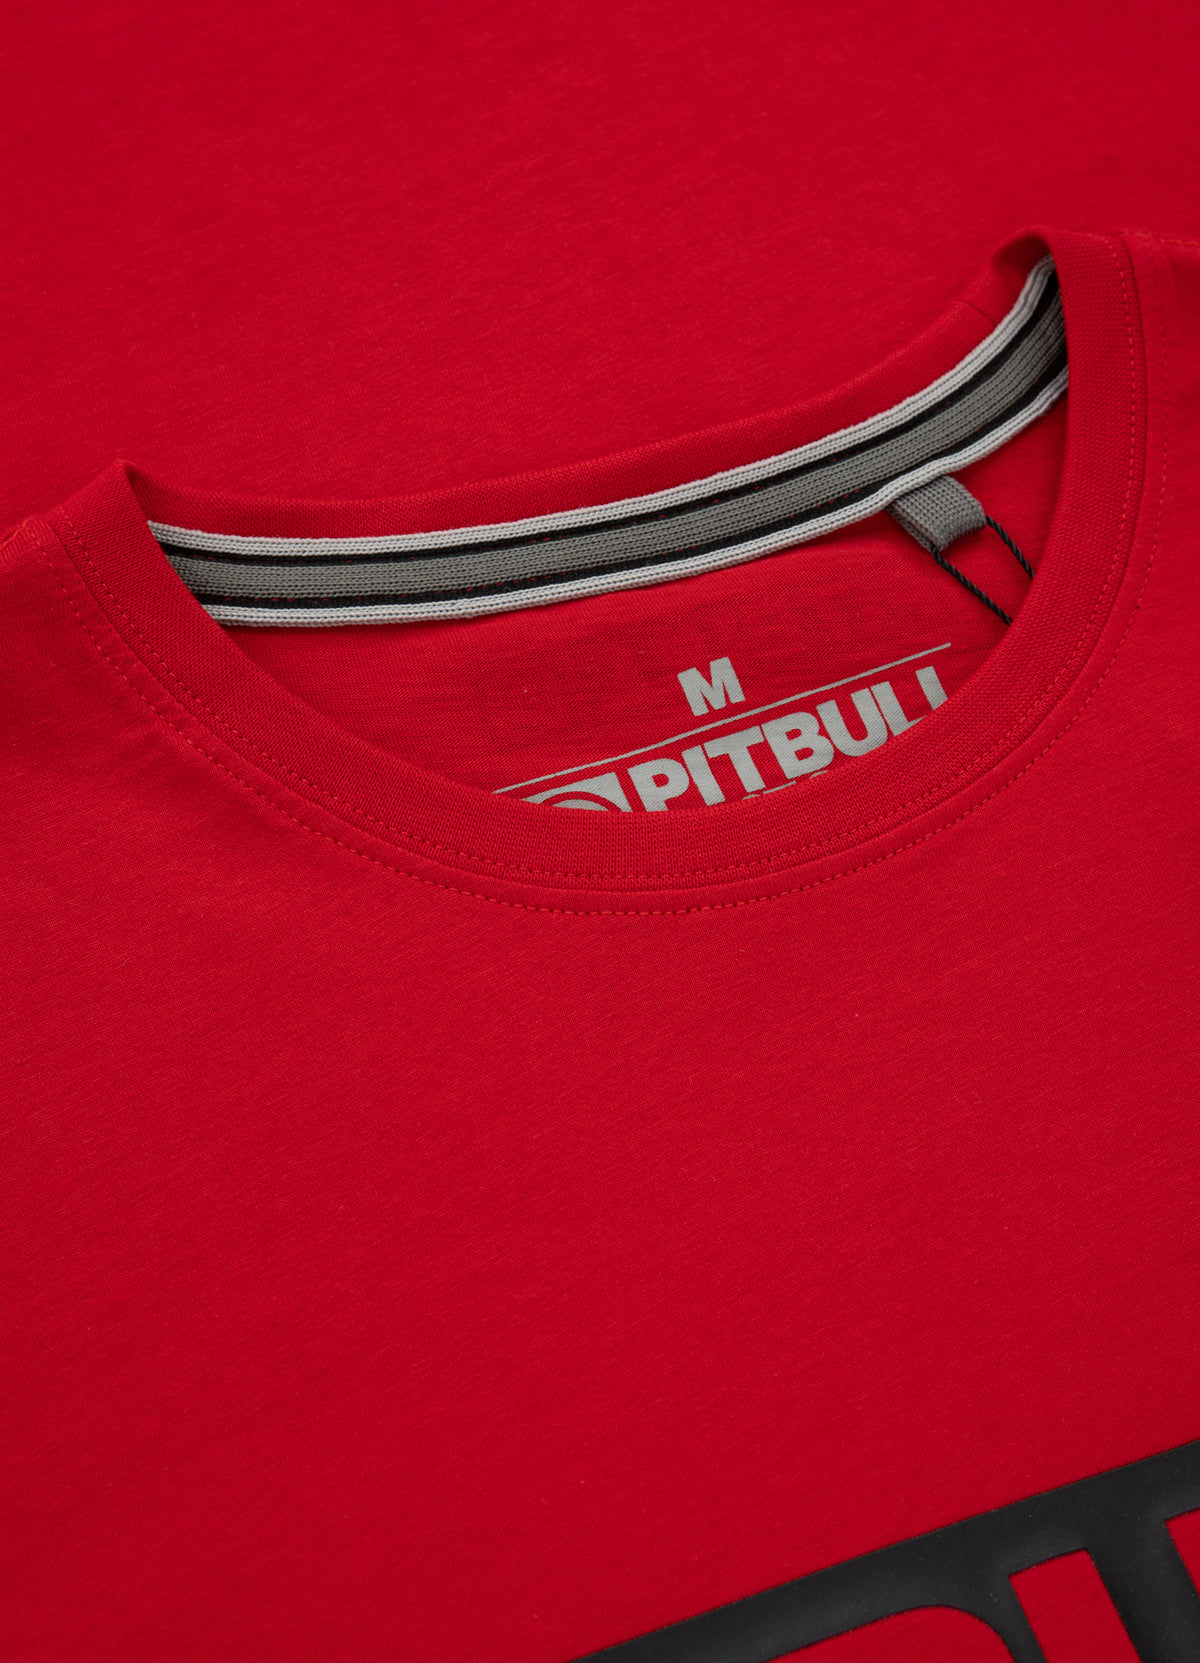 HILLTOP Lightweight Red T-shirt - Pitbullstore.eu